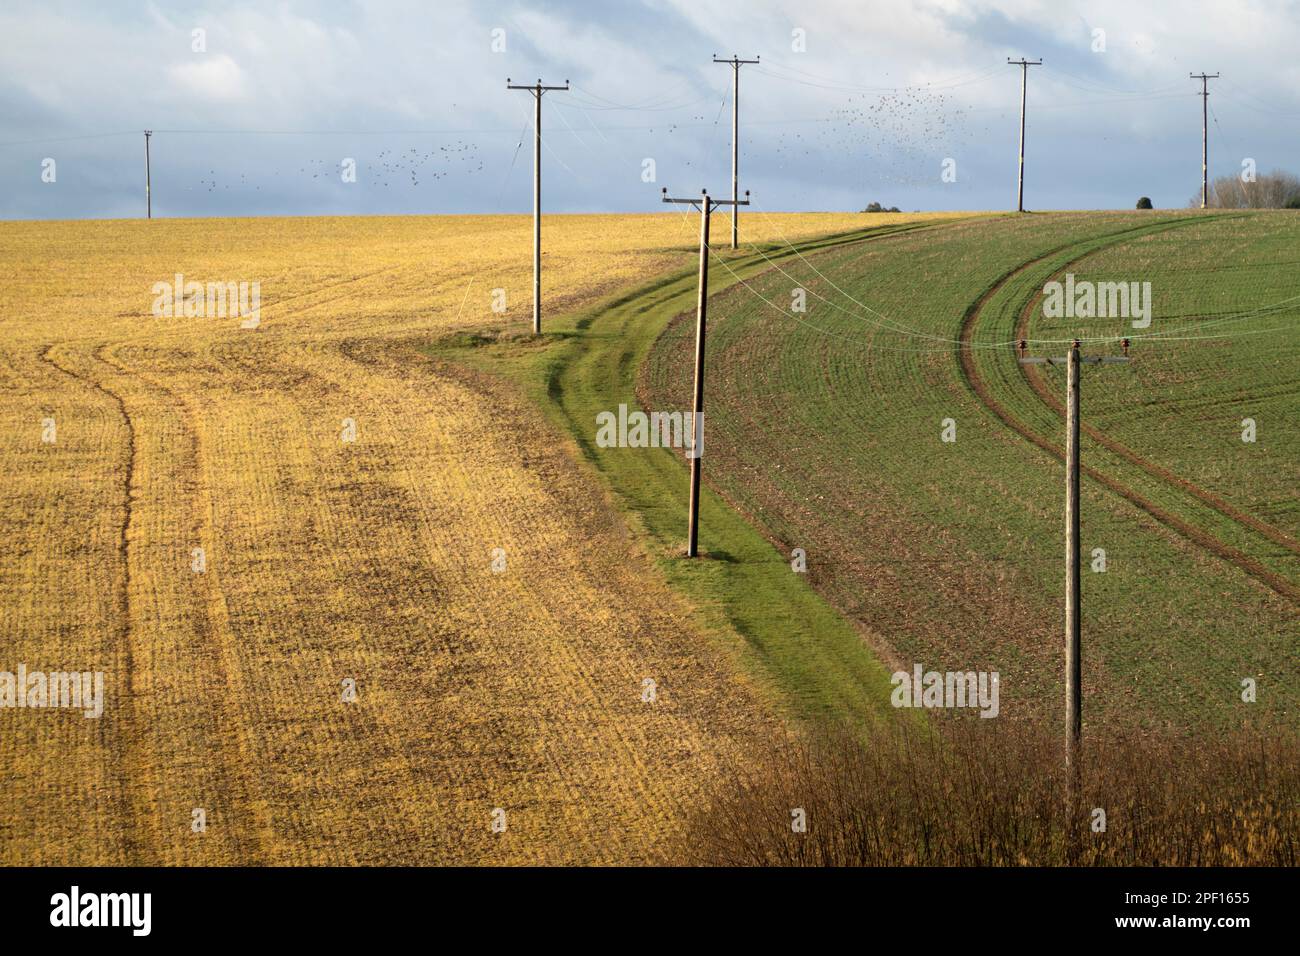 Telégrafo que cruza los campos de las tierras de cultivo cultivables, Peasemore, Berkshire, Inglaterra, Reino Unido, Europa Foto de stock